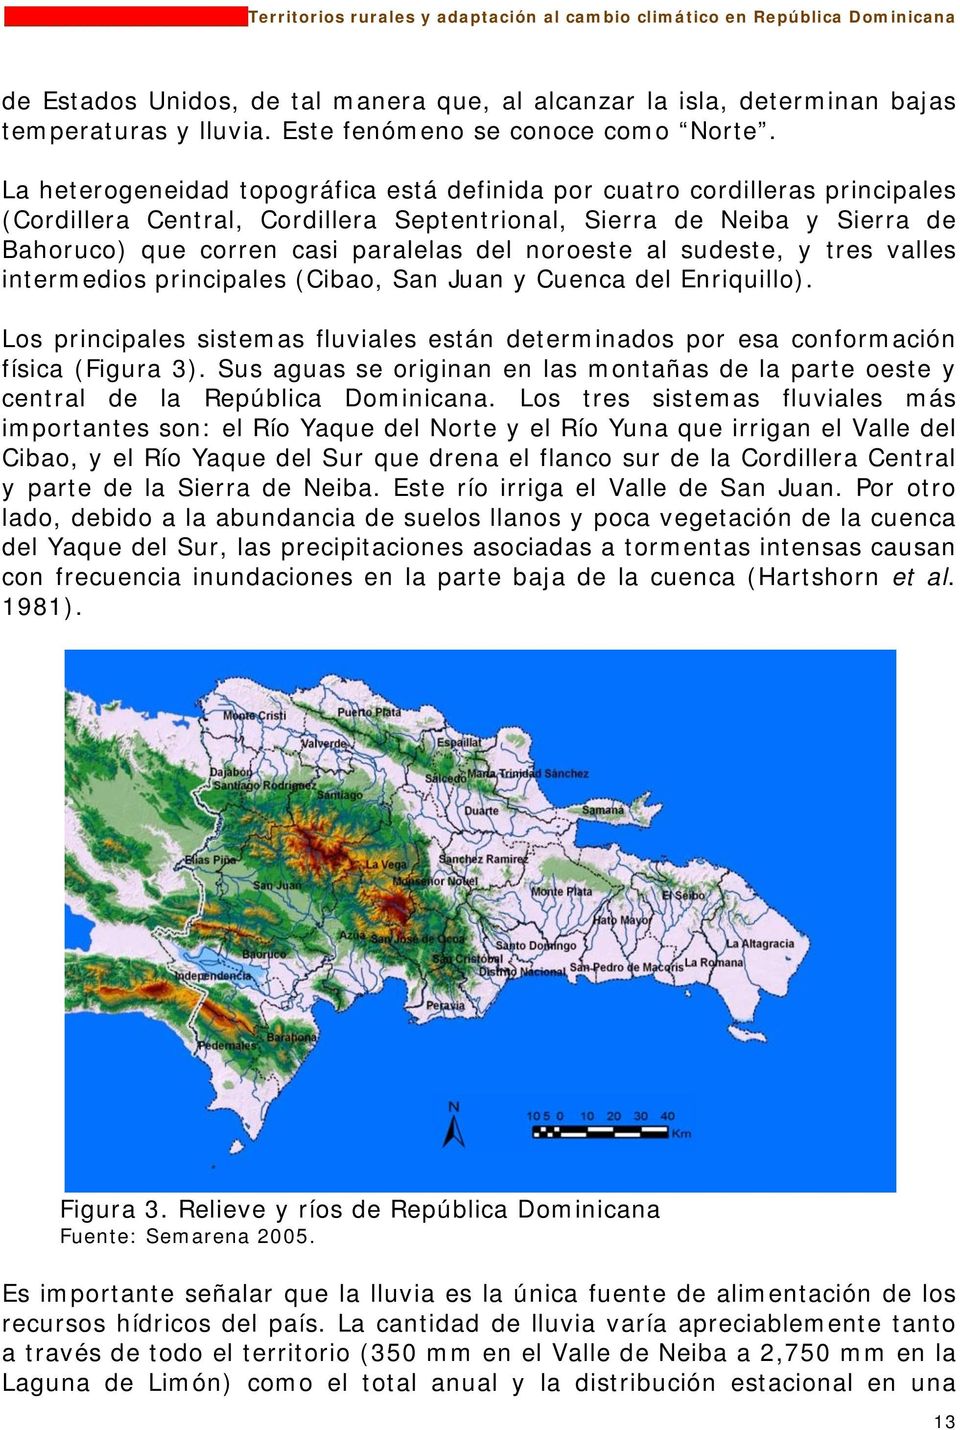 noroeste al sudeste, y tres valles intermedios principales (Cibao, San Juan y Cuenca del Enriquillo). Los principales sistemas fluviales están determinados por esa conformación física (Figura 3).